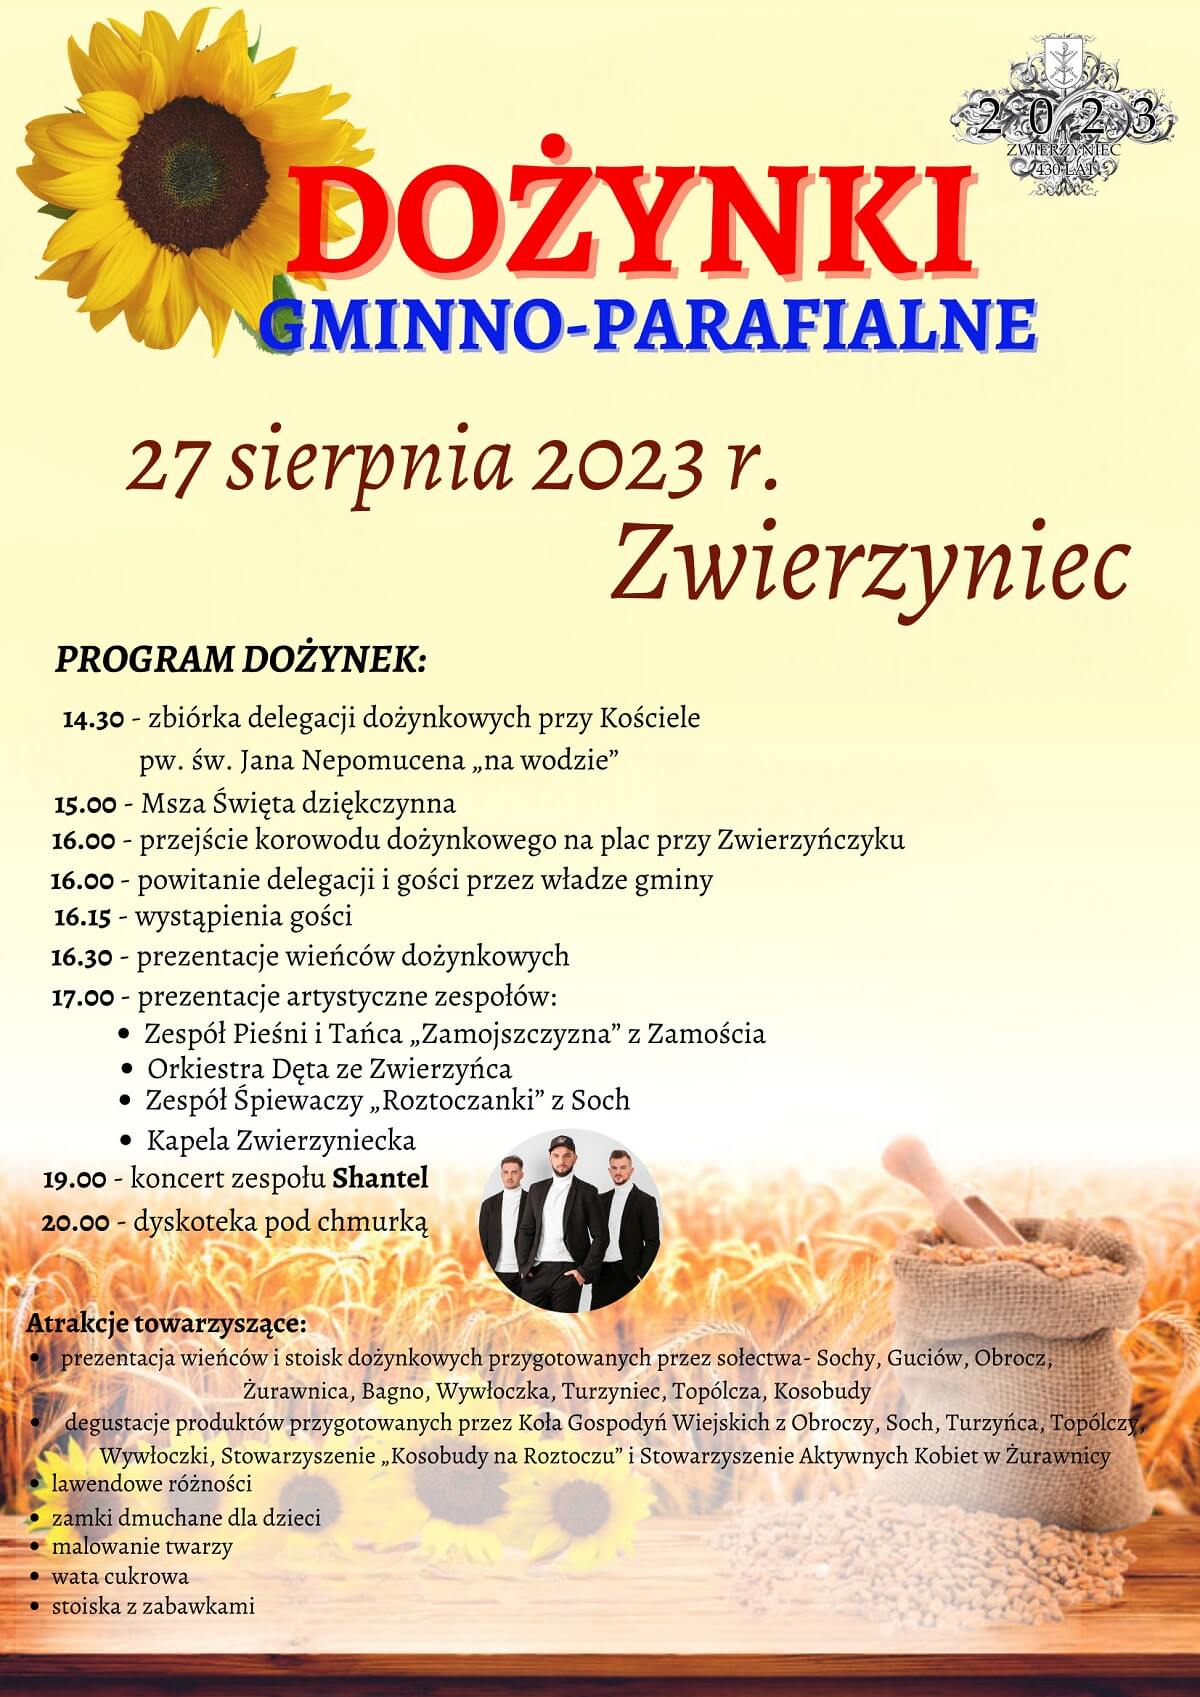 Dożynki w Zwierzyńcu 2023 - plakat, program wydarzenia